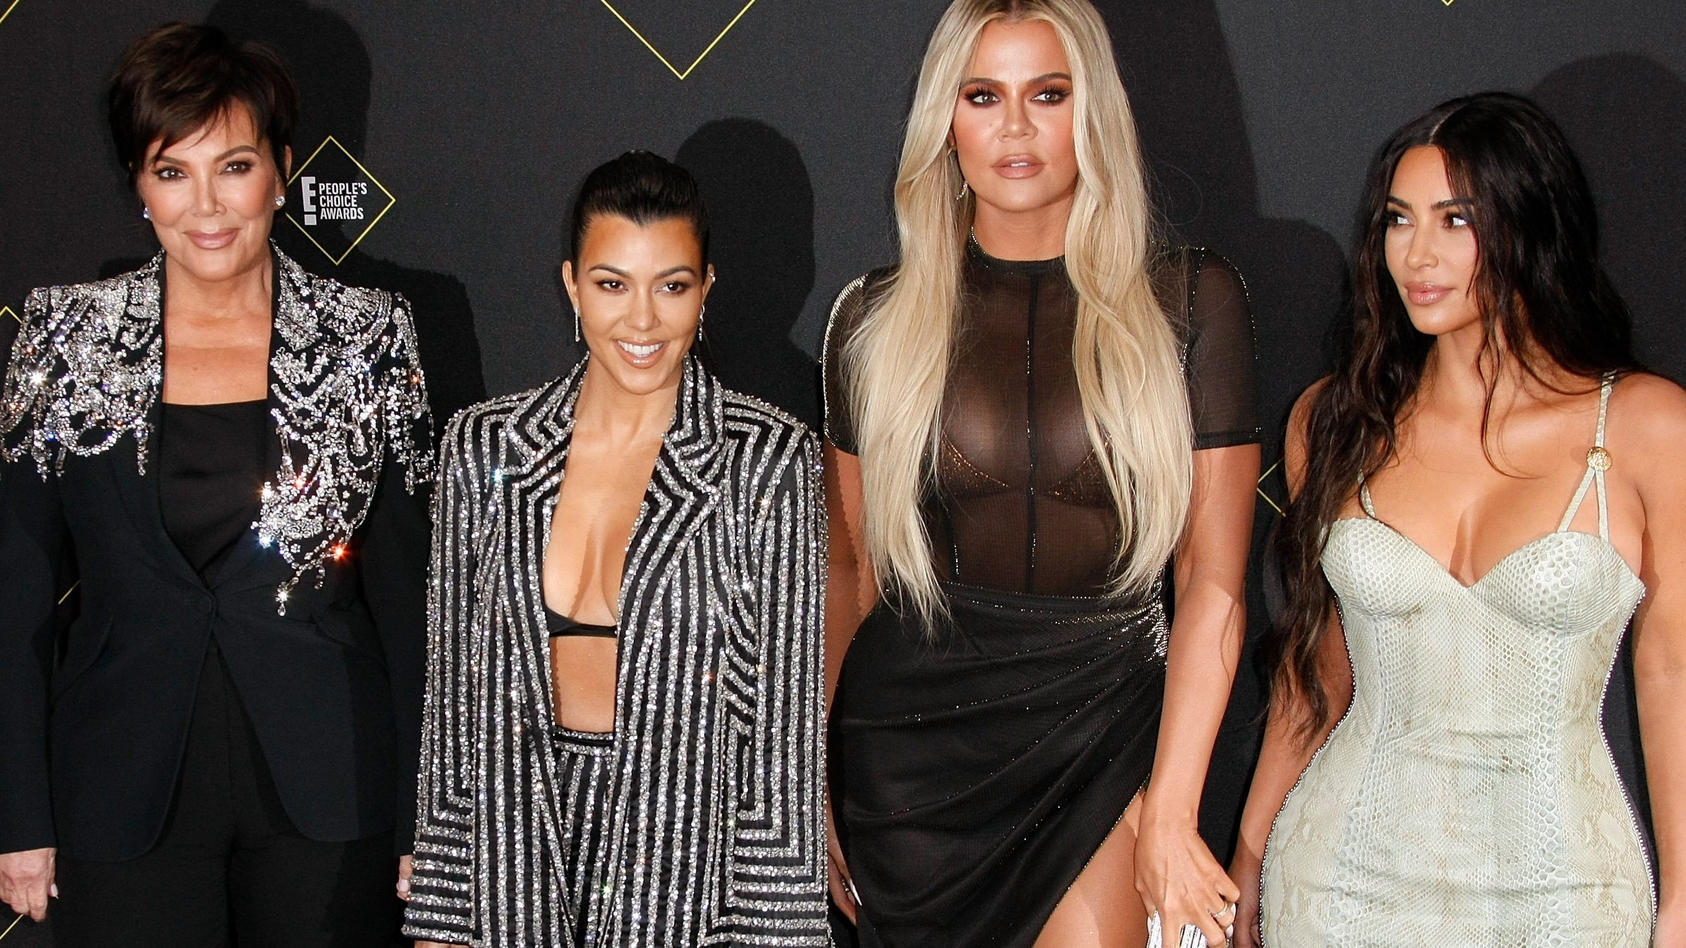 Der Kardashian / Jenner-Clan meldet sich mit einer neuen Reality-Serie zurück.